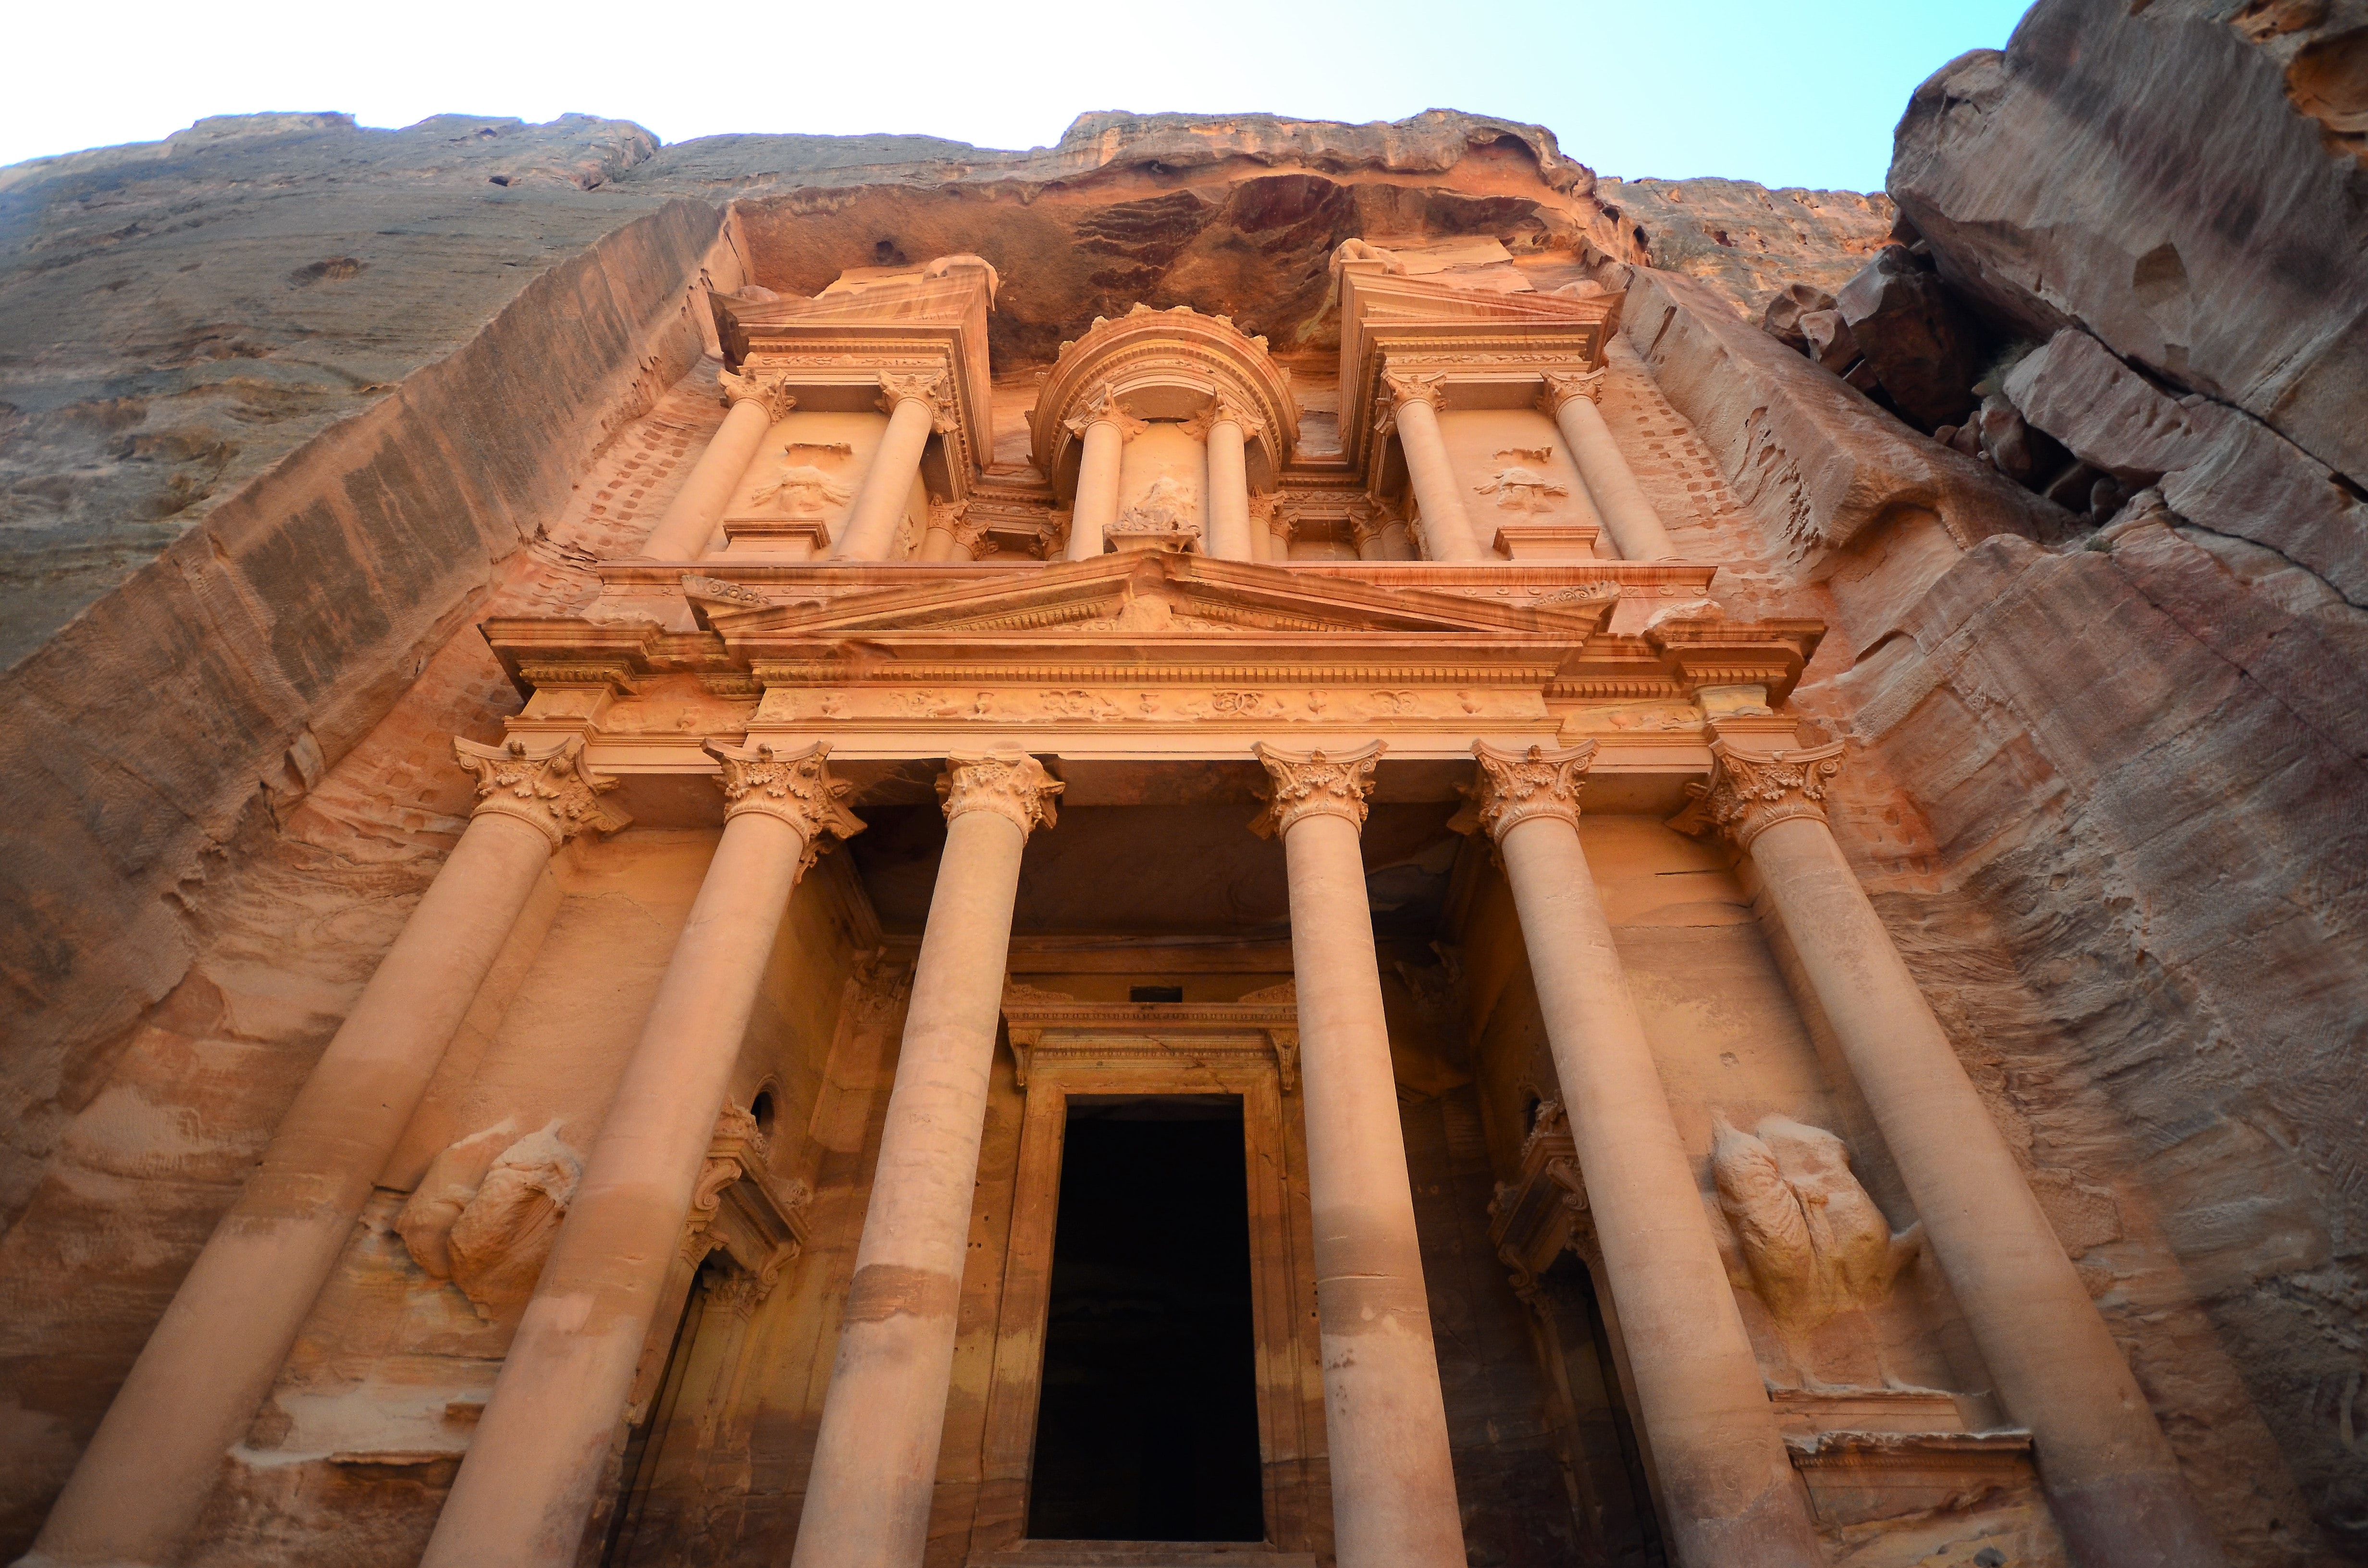 The Treasury of Petra (Al-Khazneh)